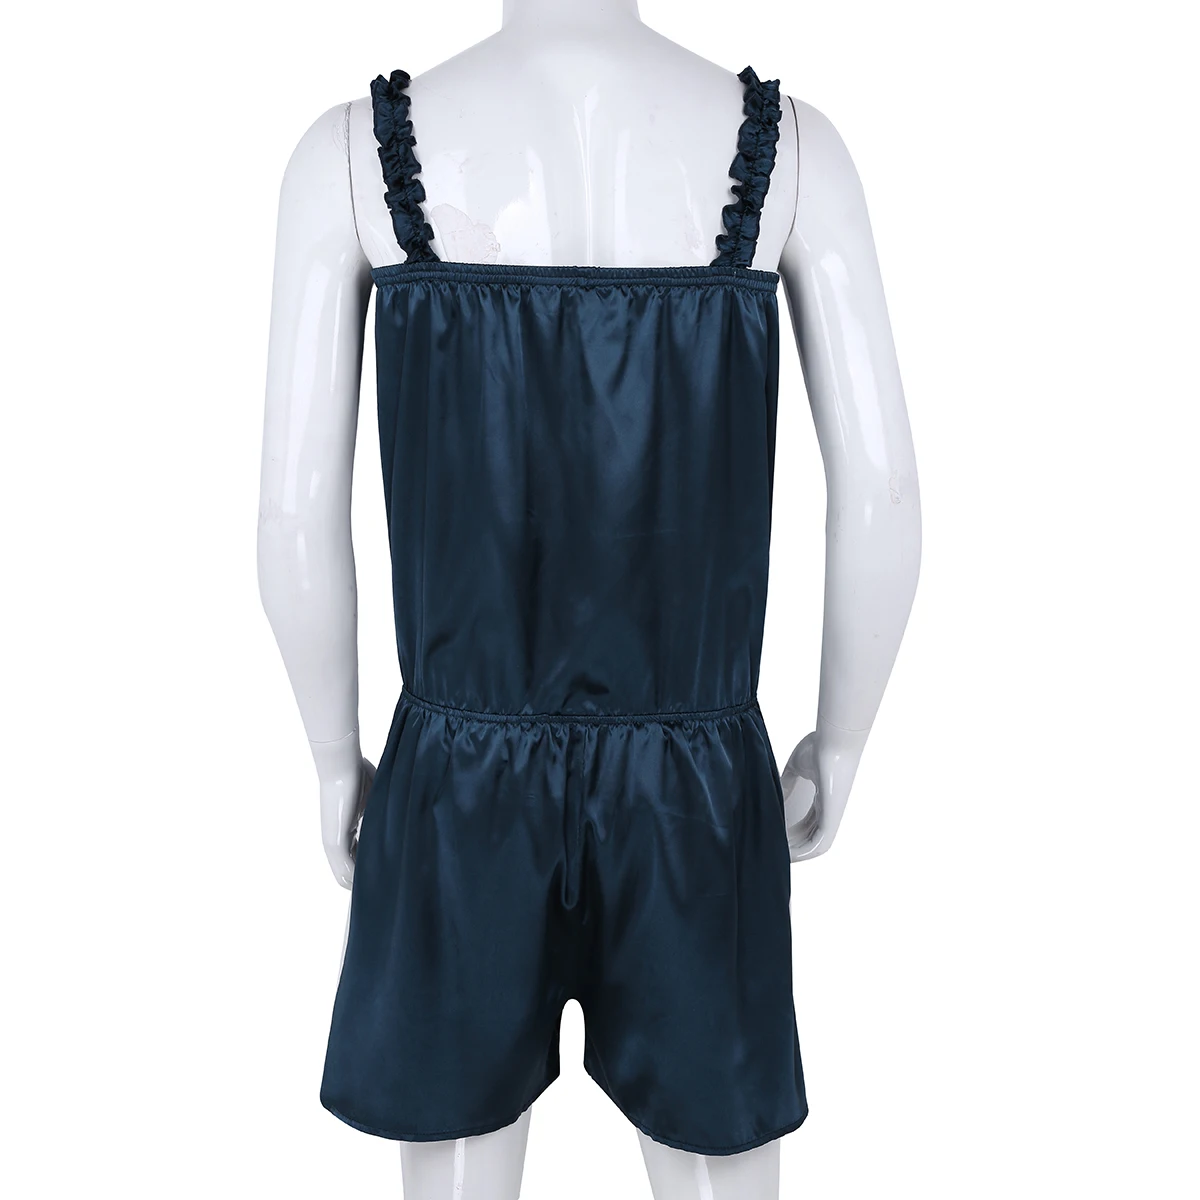 DPOIS сексуальное мужское платье со стразами, блестящее атласное нарядное платье, штаны, гофрированное ночное белье, мужское нижнее белье Ночная рубашка, пижамы